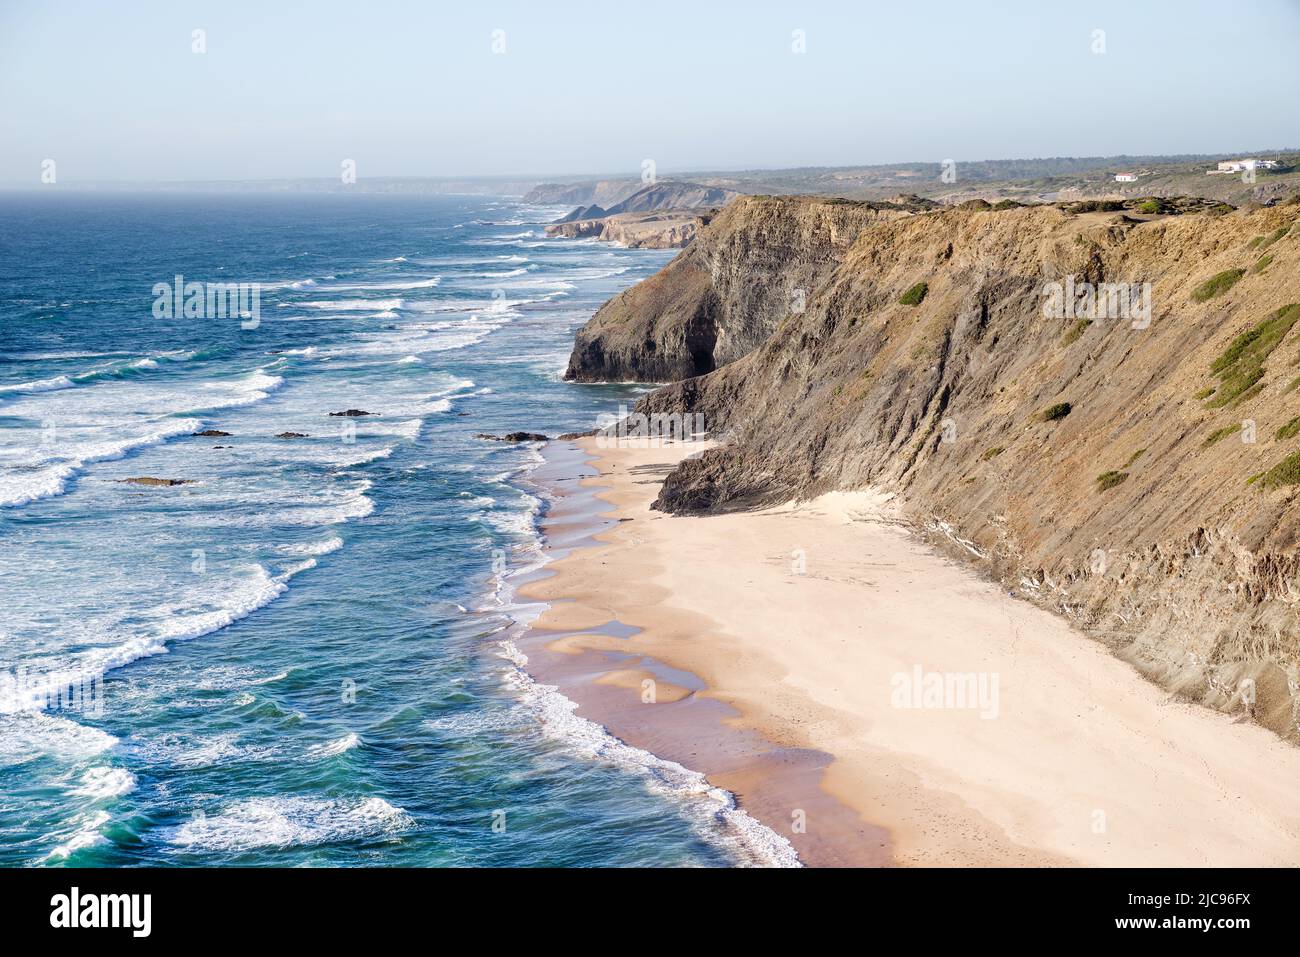 Diferentes tonos de arena crean un contraste sorprendente en la marea baja - Praia de Fateixa, Algarve, Portugal Foto de stock